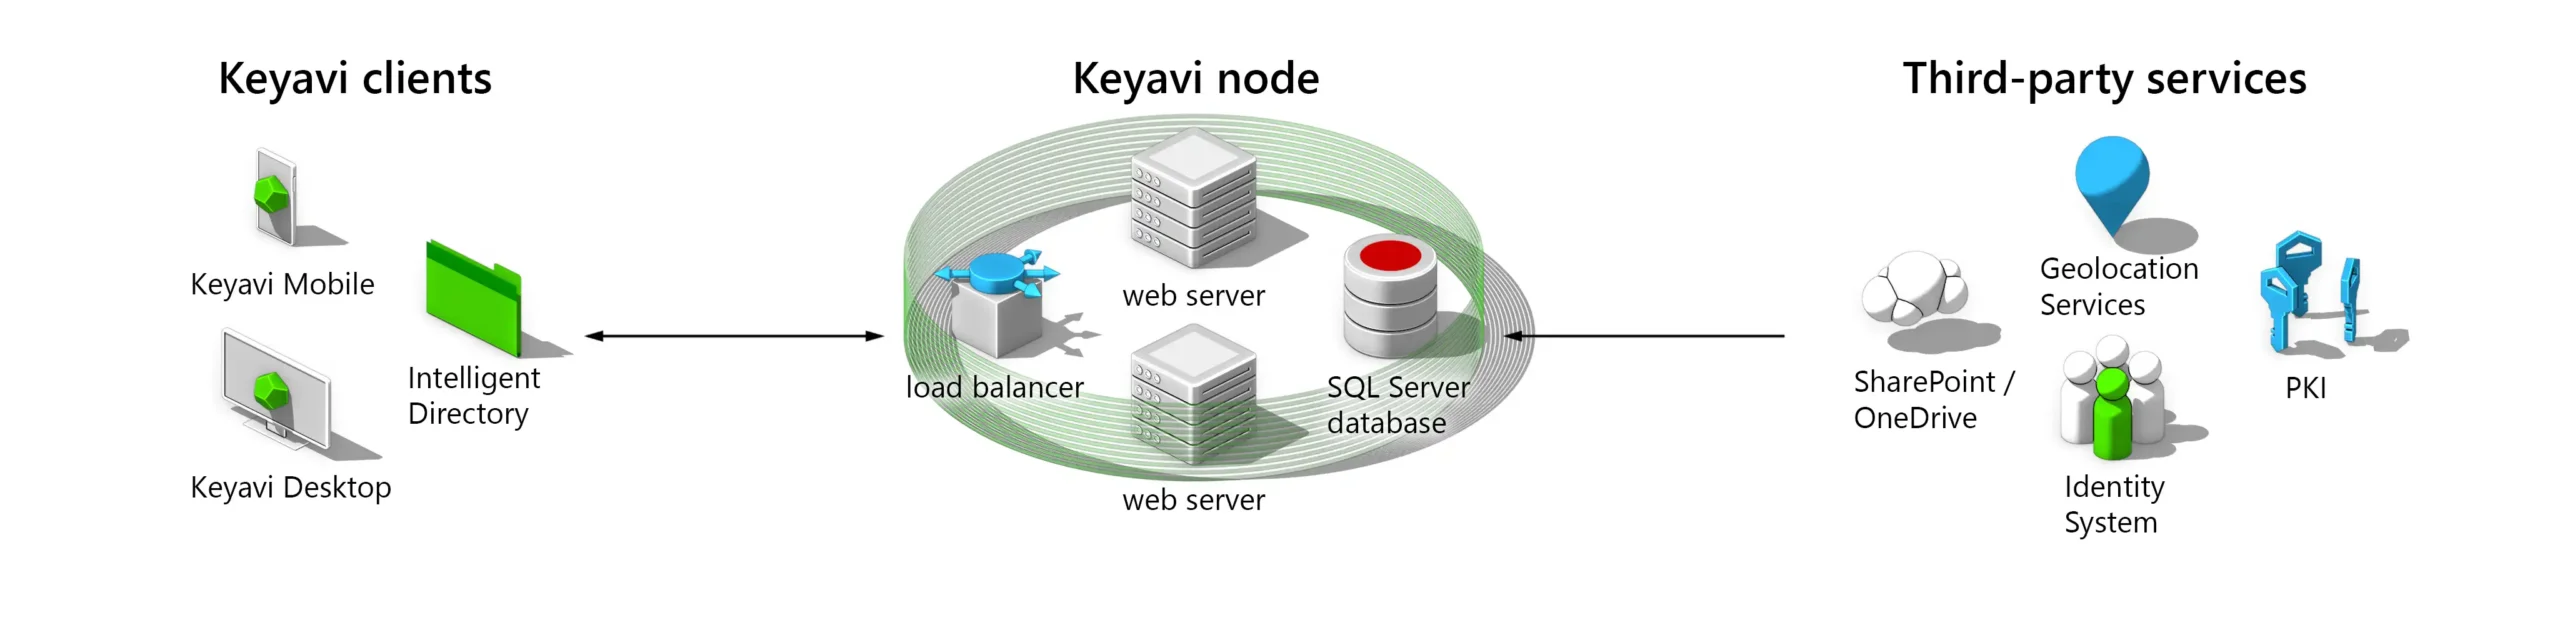 Keyavi Services Diagram